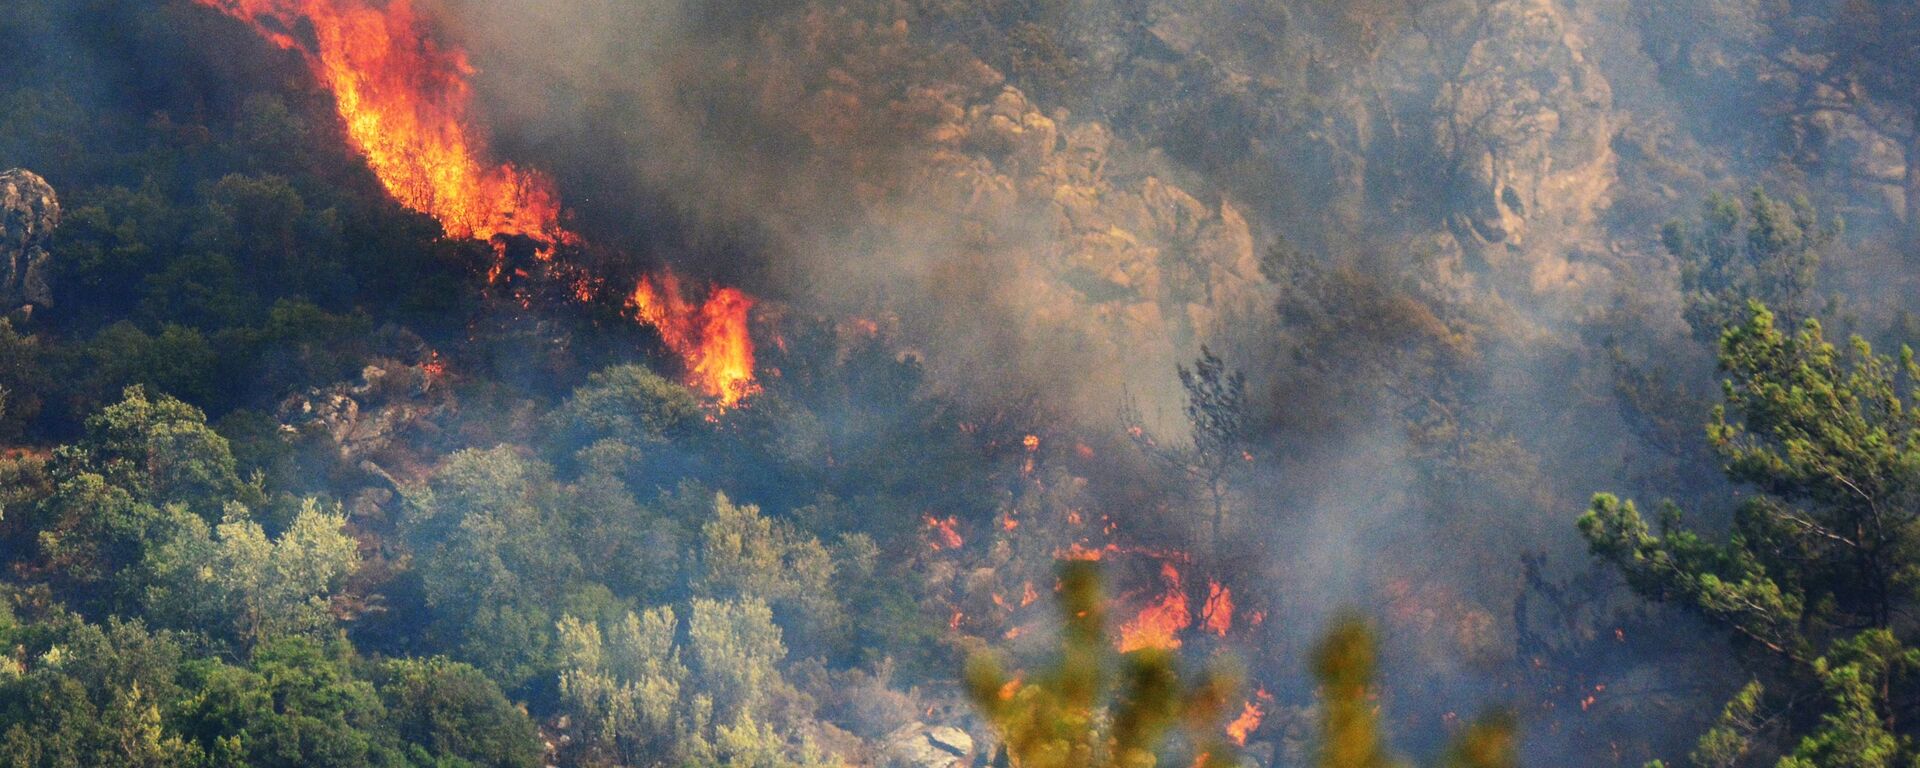 Лесной пожар в окрестностях турецкого города Мармарис - Sputnik Արմենիա, 1920, 14.08.2021